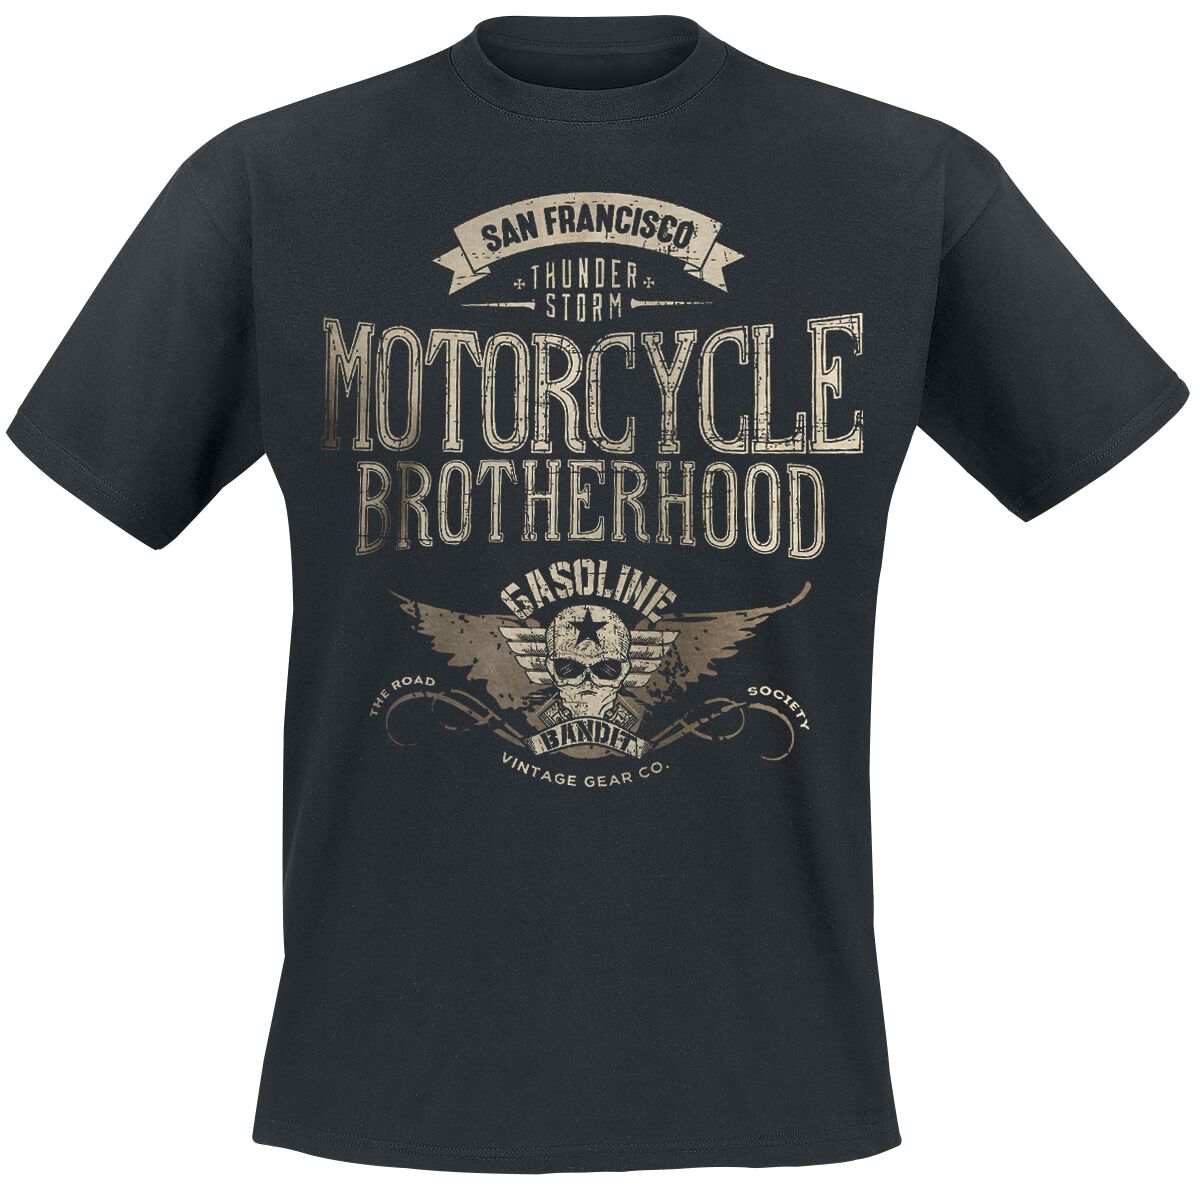 Image of Gasoline Bandit Motorcycle Brotherhood T-Shirt schwarz